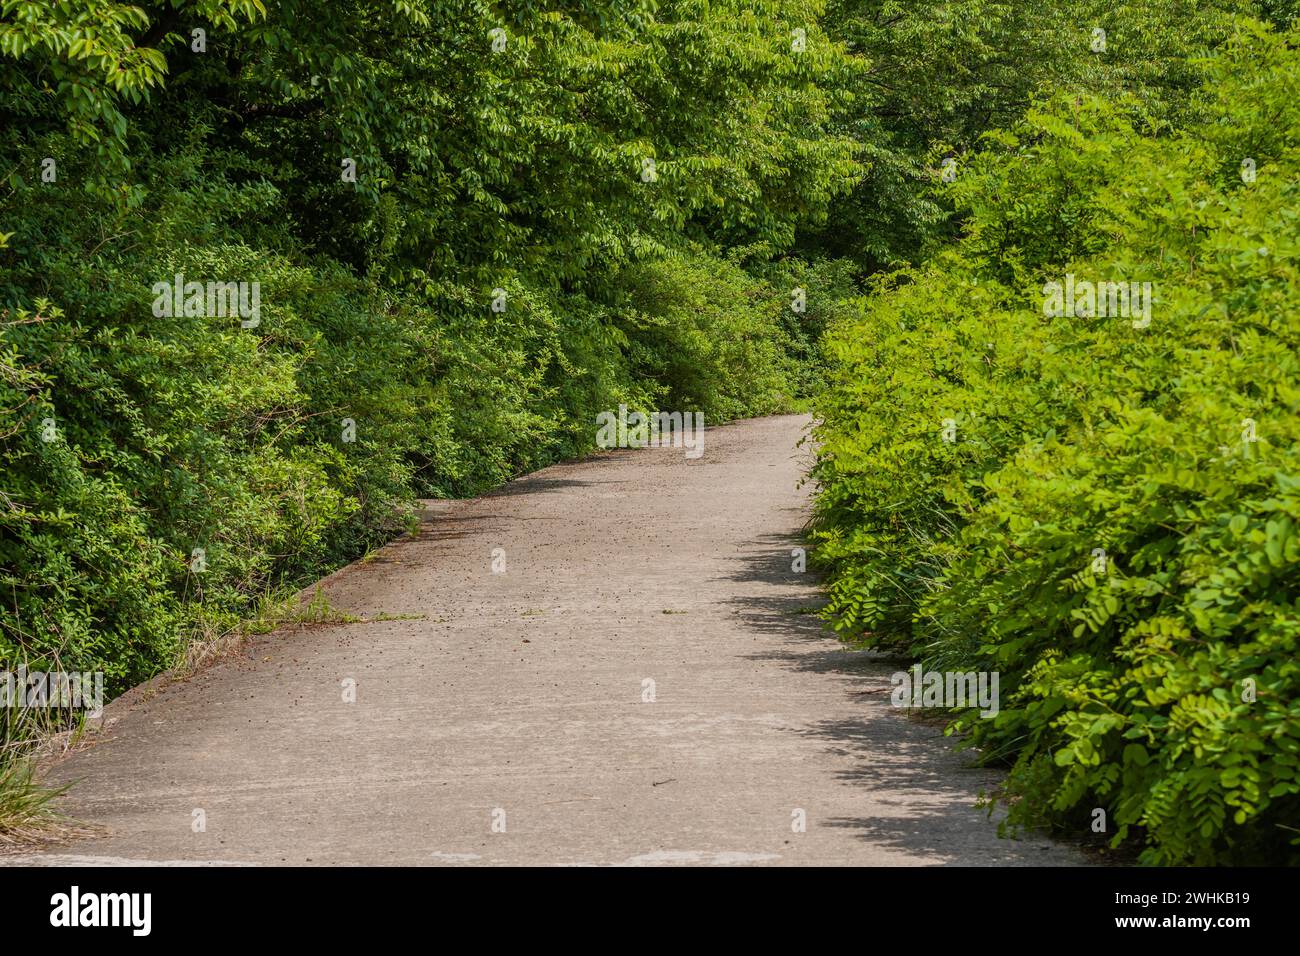 Petite route de campagne à une voie bordée de feuillage vert luxuriant par une journée de printemps ensoleillée Banque D'Images